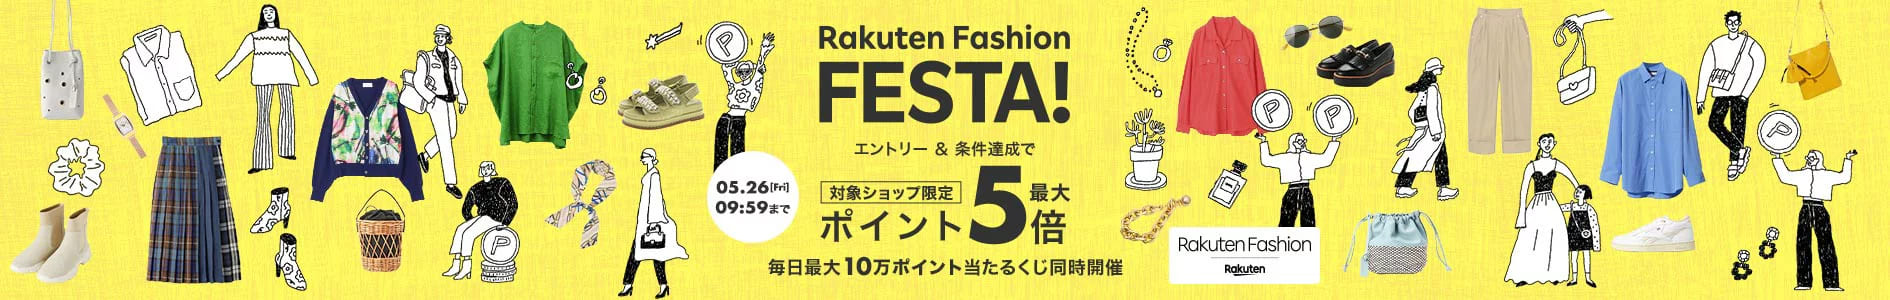 Rakuten Fashion FESTA!_楽天ファッション